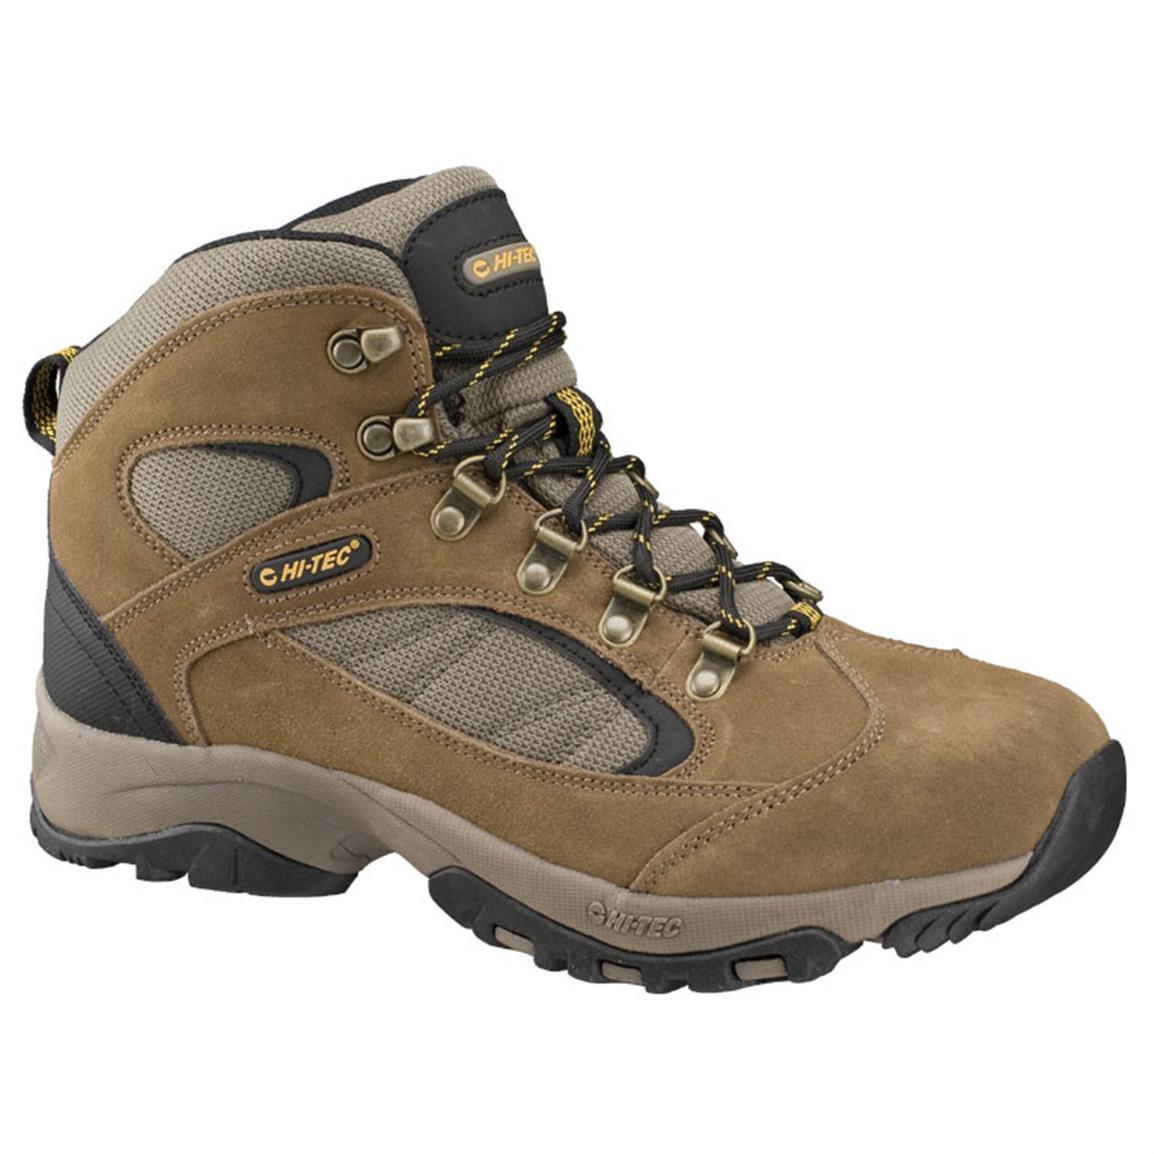 Men's Hi - Tec® Midland Mid Shoes - 183410, Hiking Boots & Shoes at ...